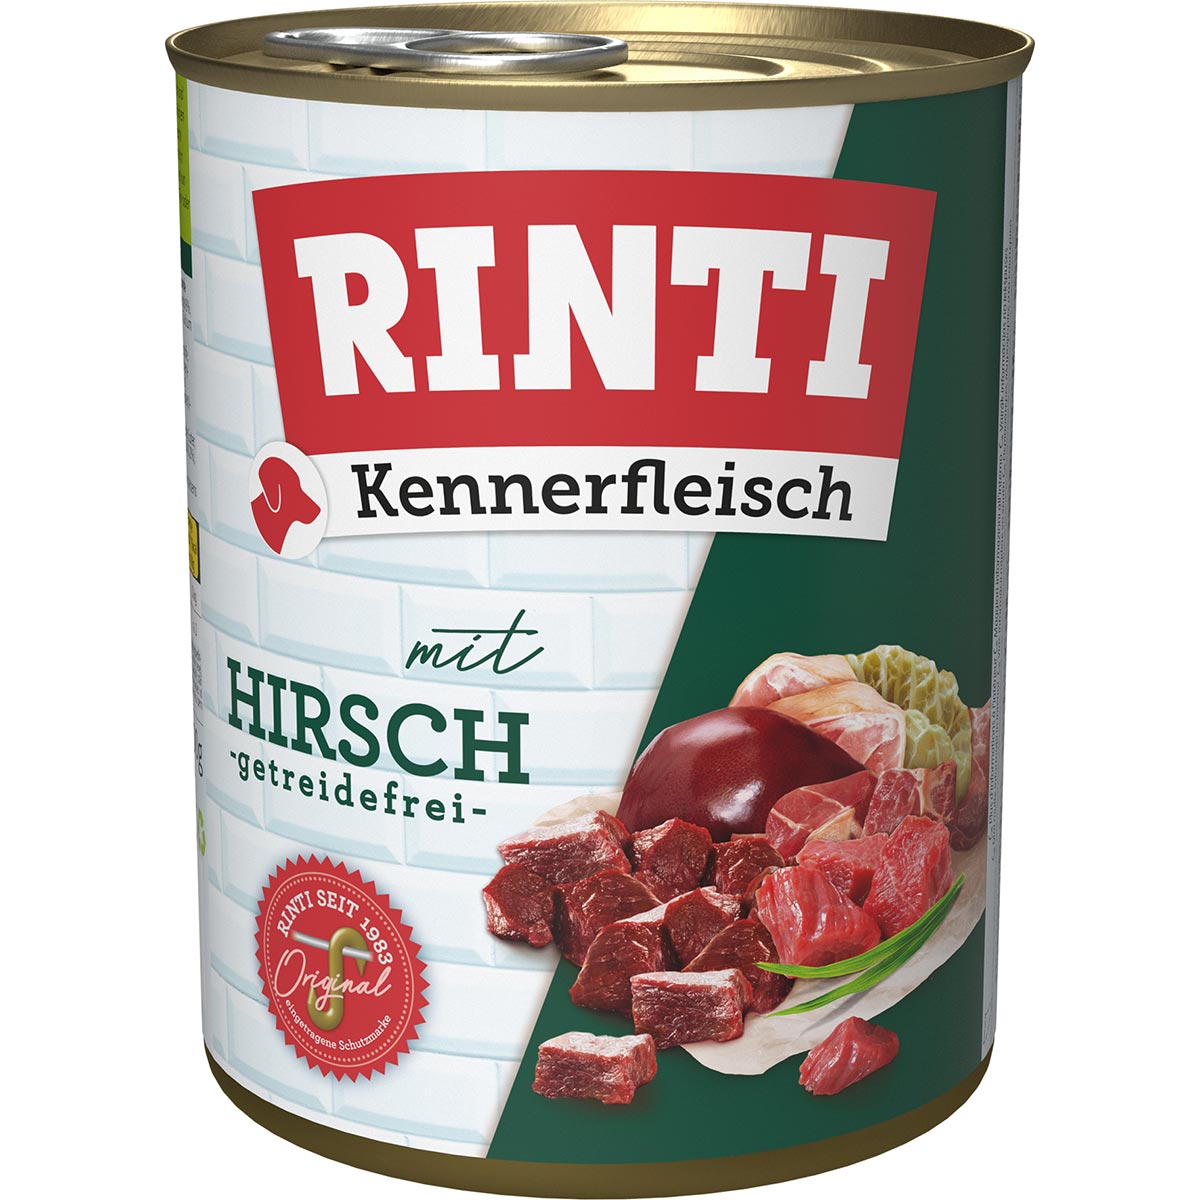 Rinti Kennerfleisch Hirsch 12x800g von Rinti